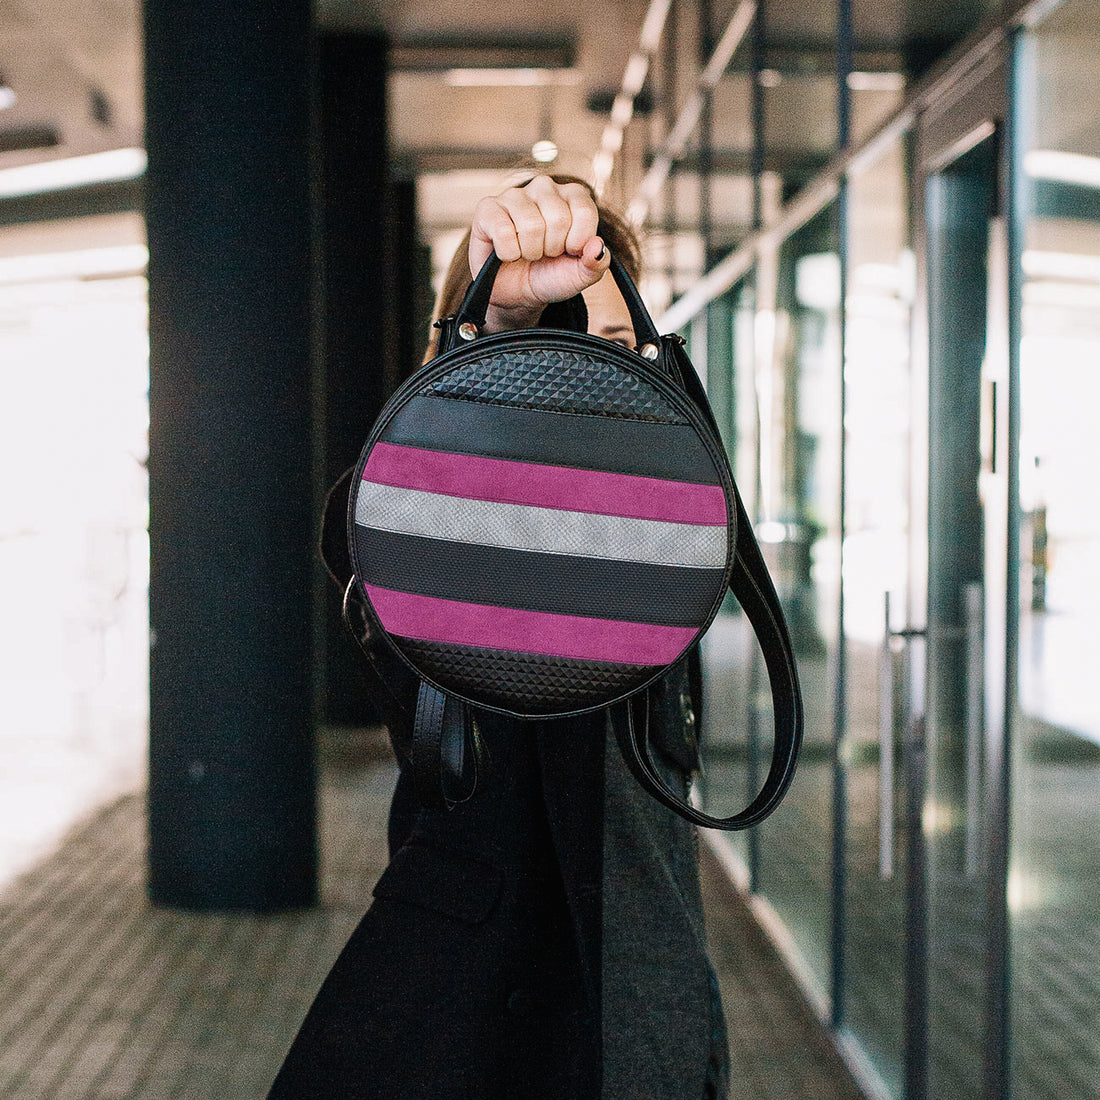 3WAY Circular Bags - Okrugle torbe u koje ste se zaljubili na prvu!